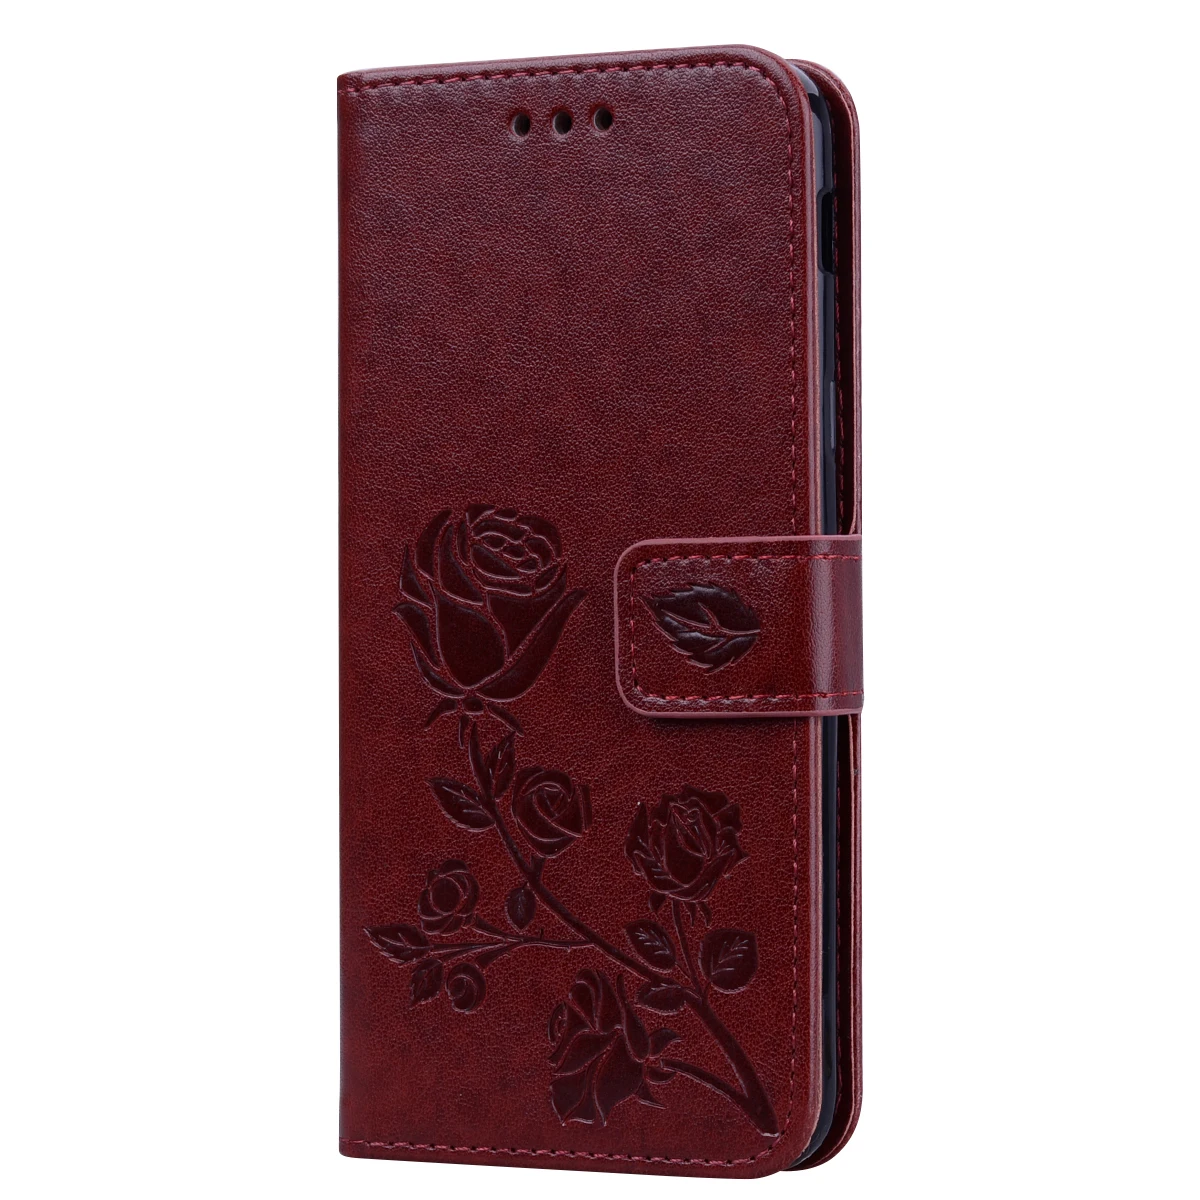 Кожаный флип-чехол для телефона для samsung J6 Plus роскошный цветочный кошелек сумка чехол s для samsung Galaxy J6plus J610 J600